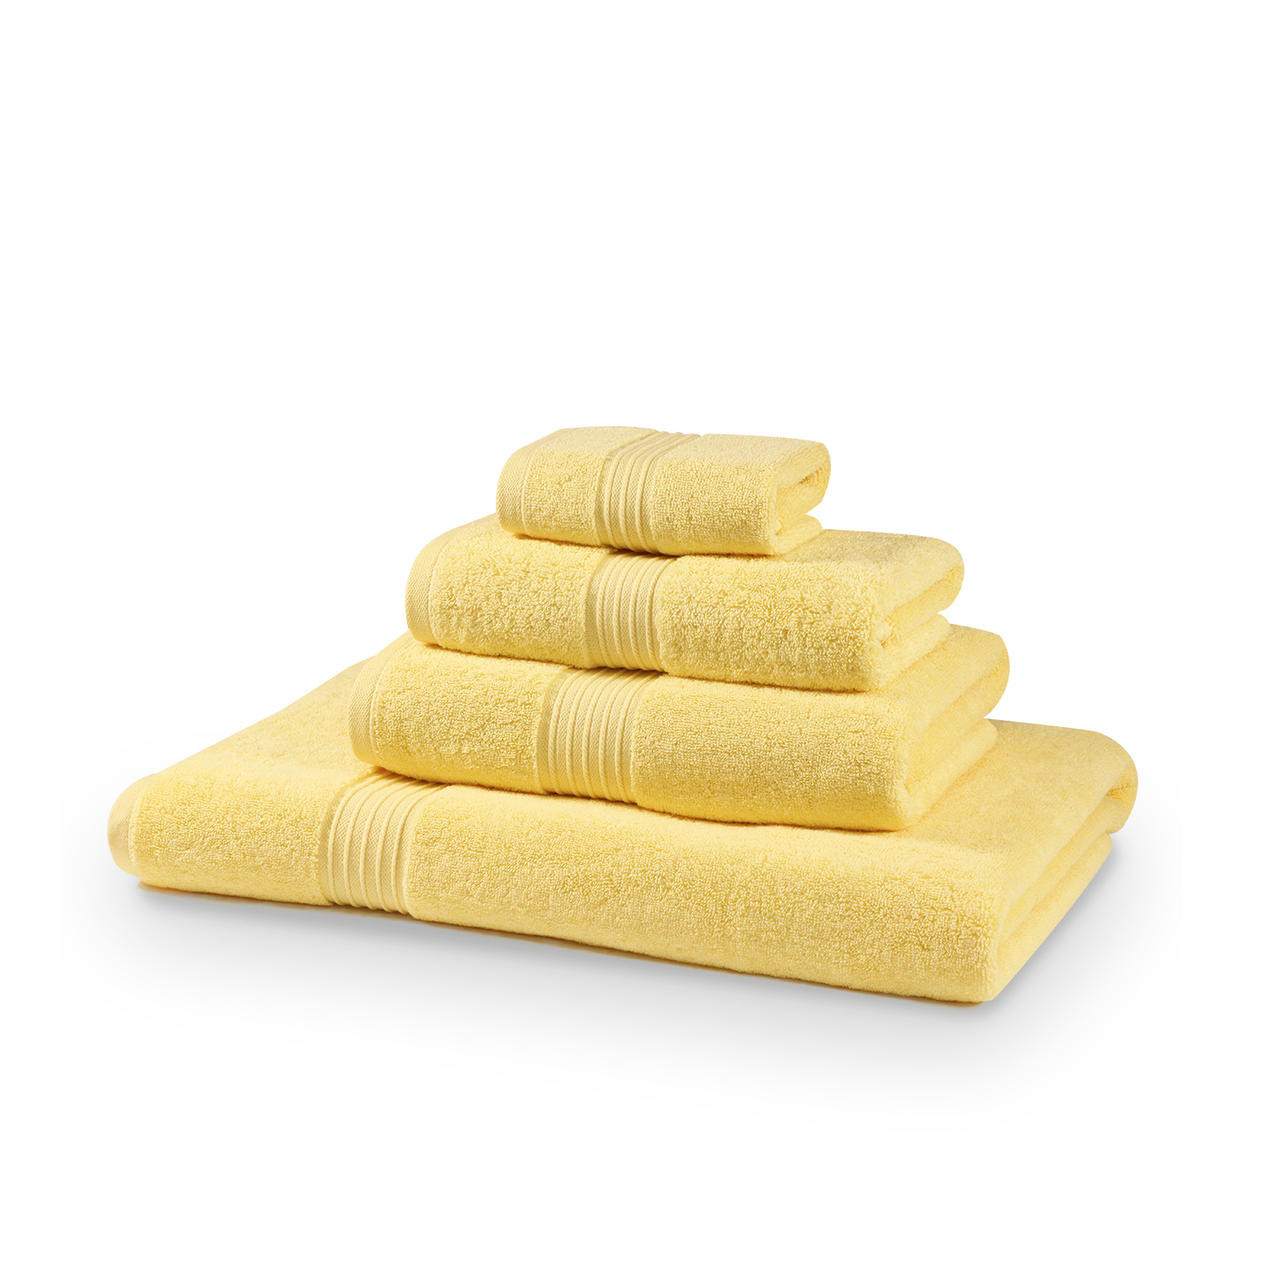 12 Piece Lemon Towel Bale 700GSM - 4 Face Cloths, 4 Hand Towels, 2